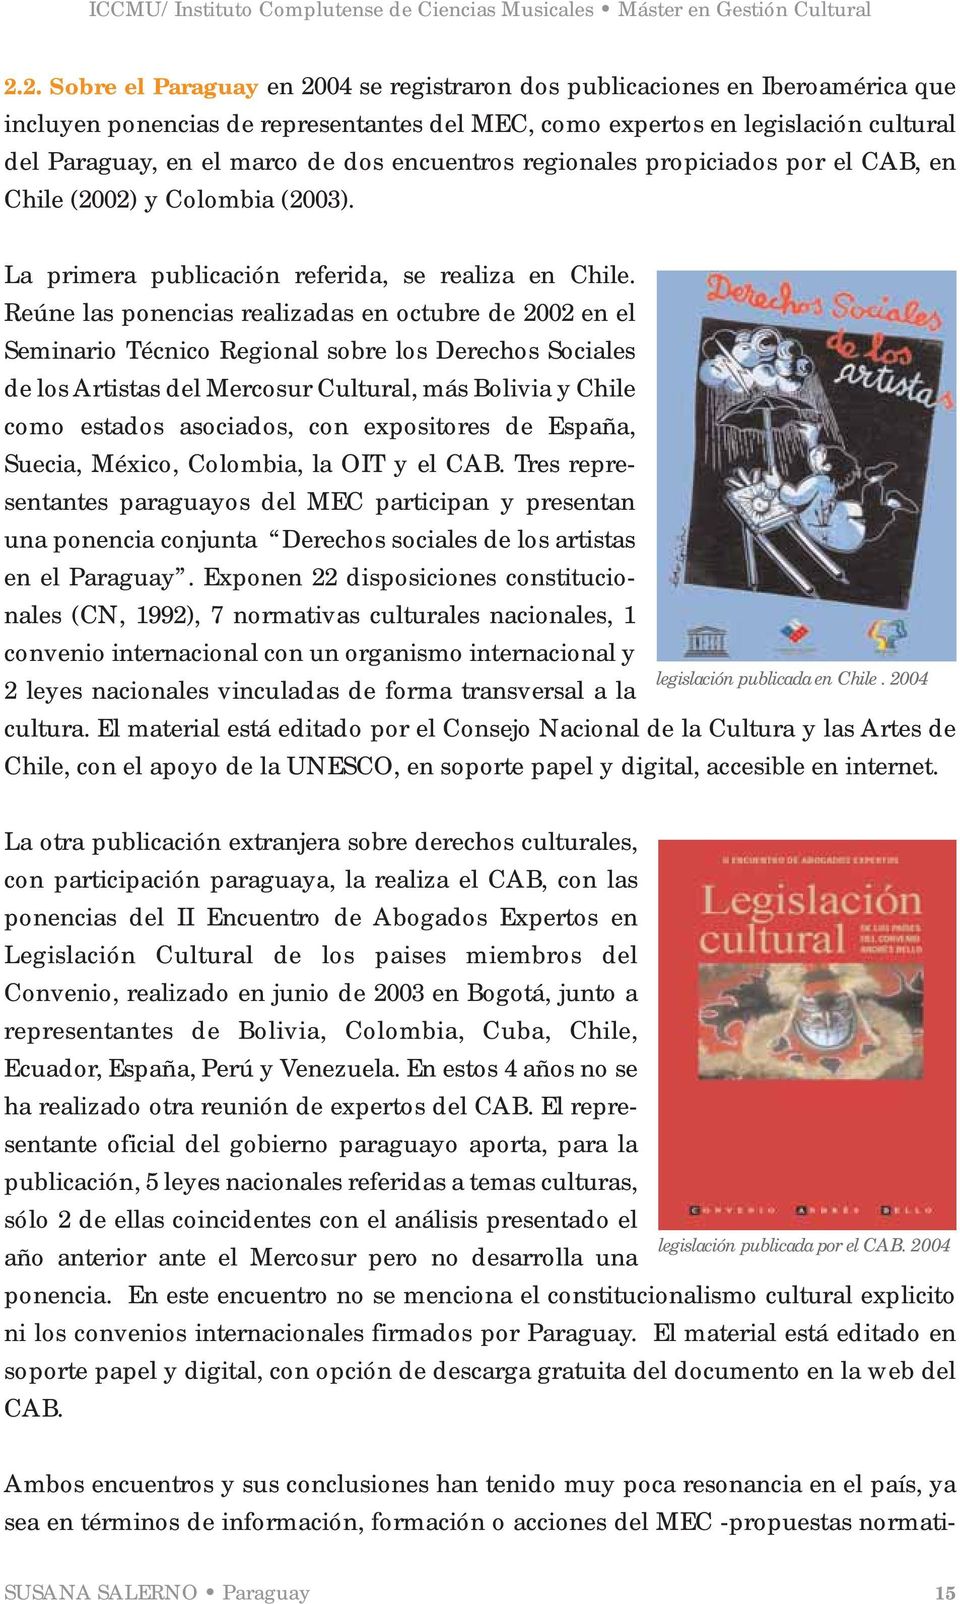 Reúne las ponencias realizadas en octubre de 2002 en el Seminario Técnico Regional sobre los Derechos Sociales de los Artistas del Mercosur Cultural, más Bolivia y Chile como estados asociados, con